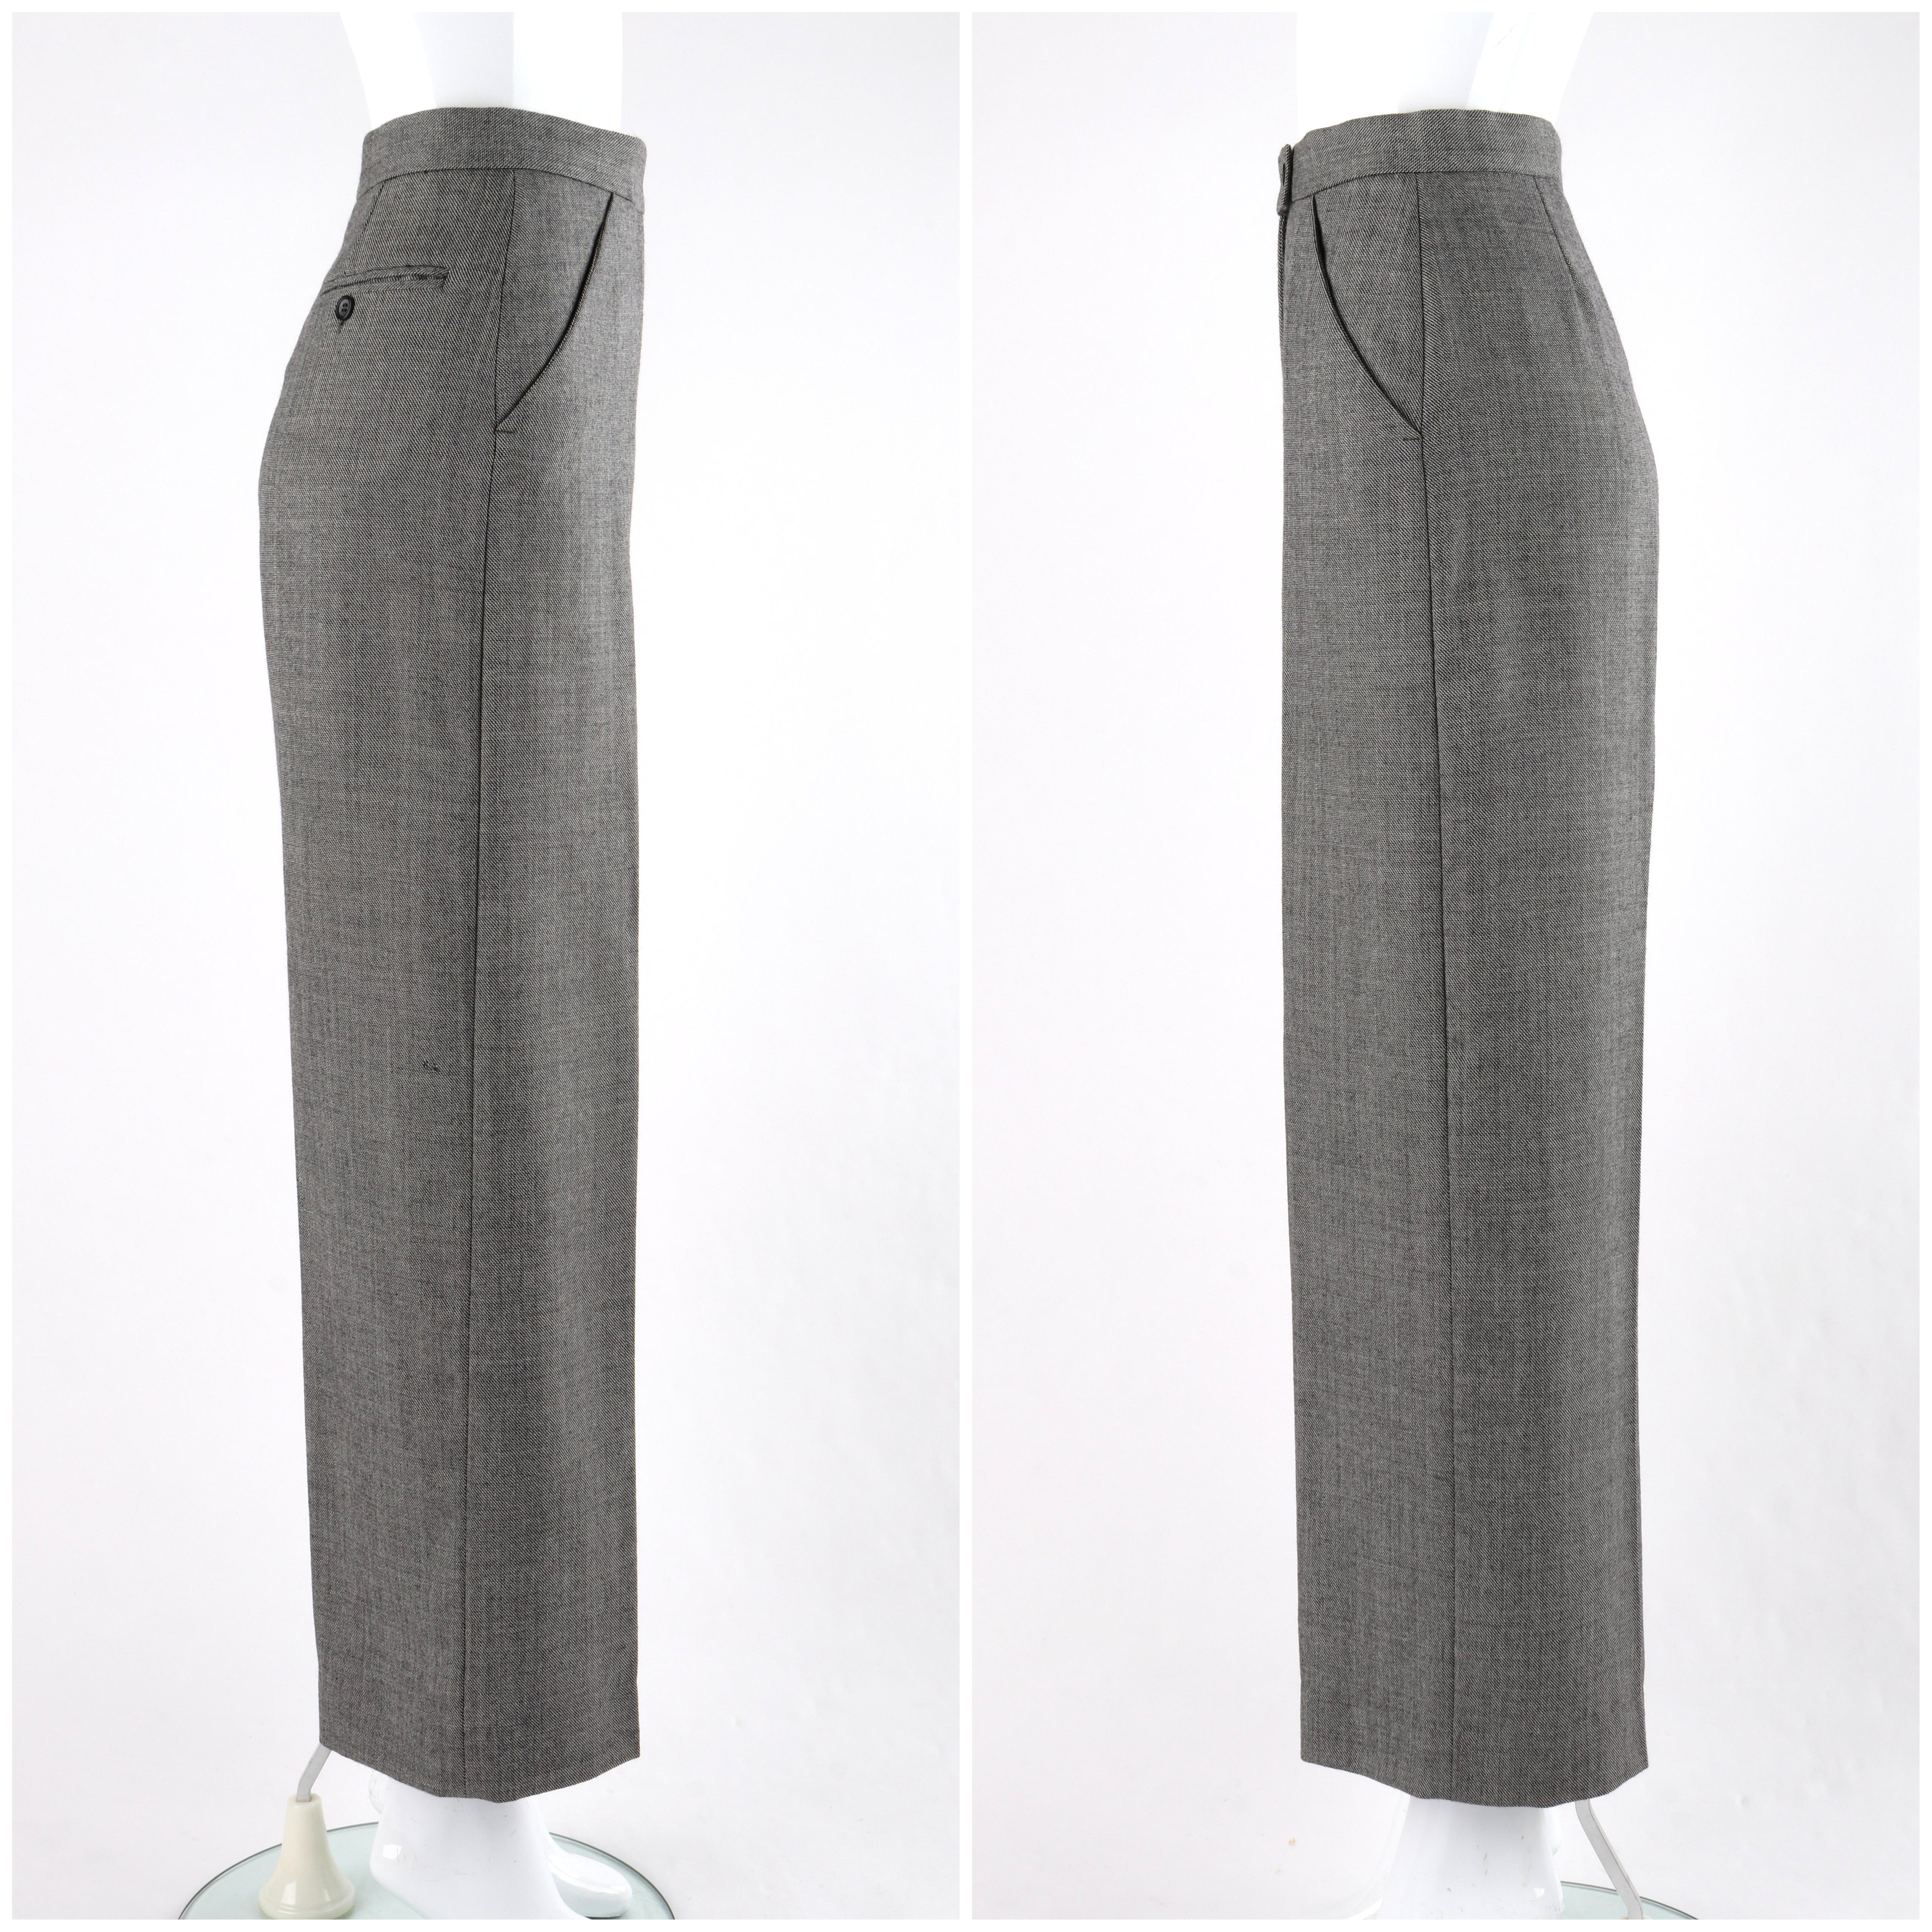 ALEXANDER McQUEEN A/W 1998 “Joan” Gray Blazer Jacket Wide Leg Trouser Pant Suit For Sale 1